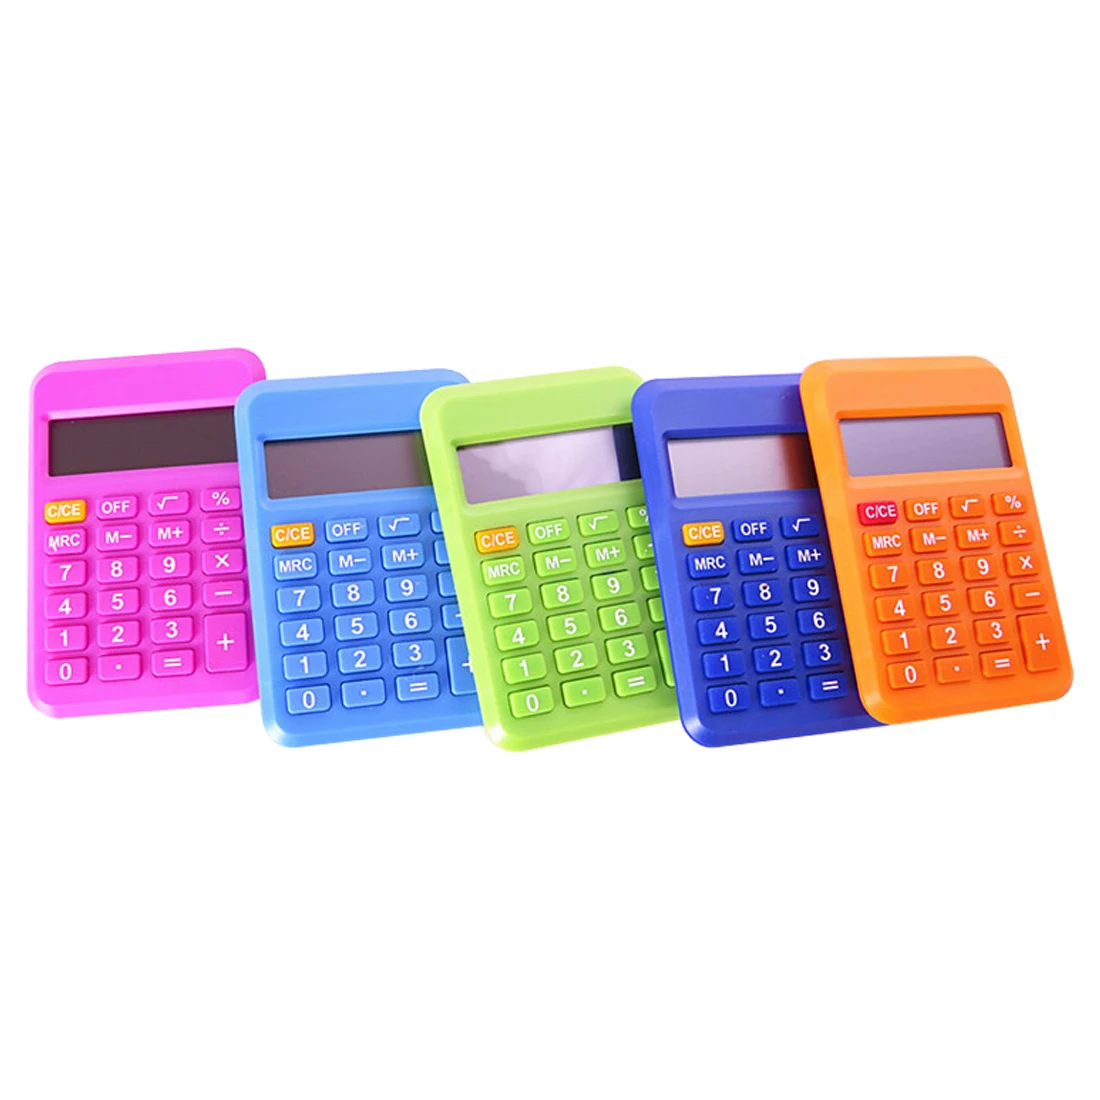 NOYOKERE Горячая студенческий мини электронный калькулятор карамельный цвет расчетные офисные принадлежности подарок 9*6 мм Размер случайный цвет